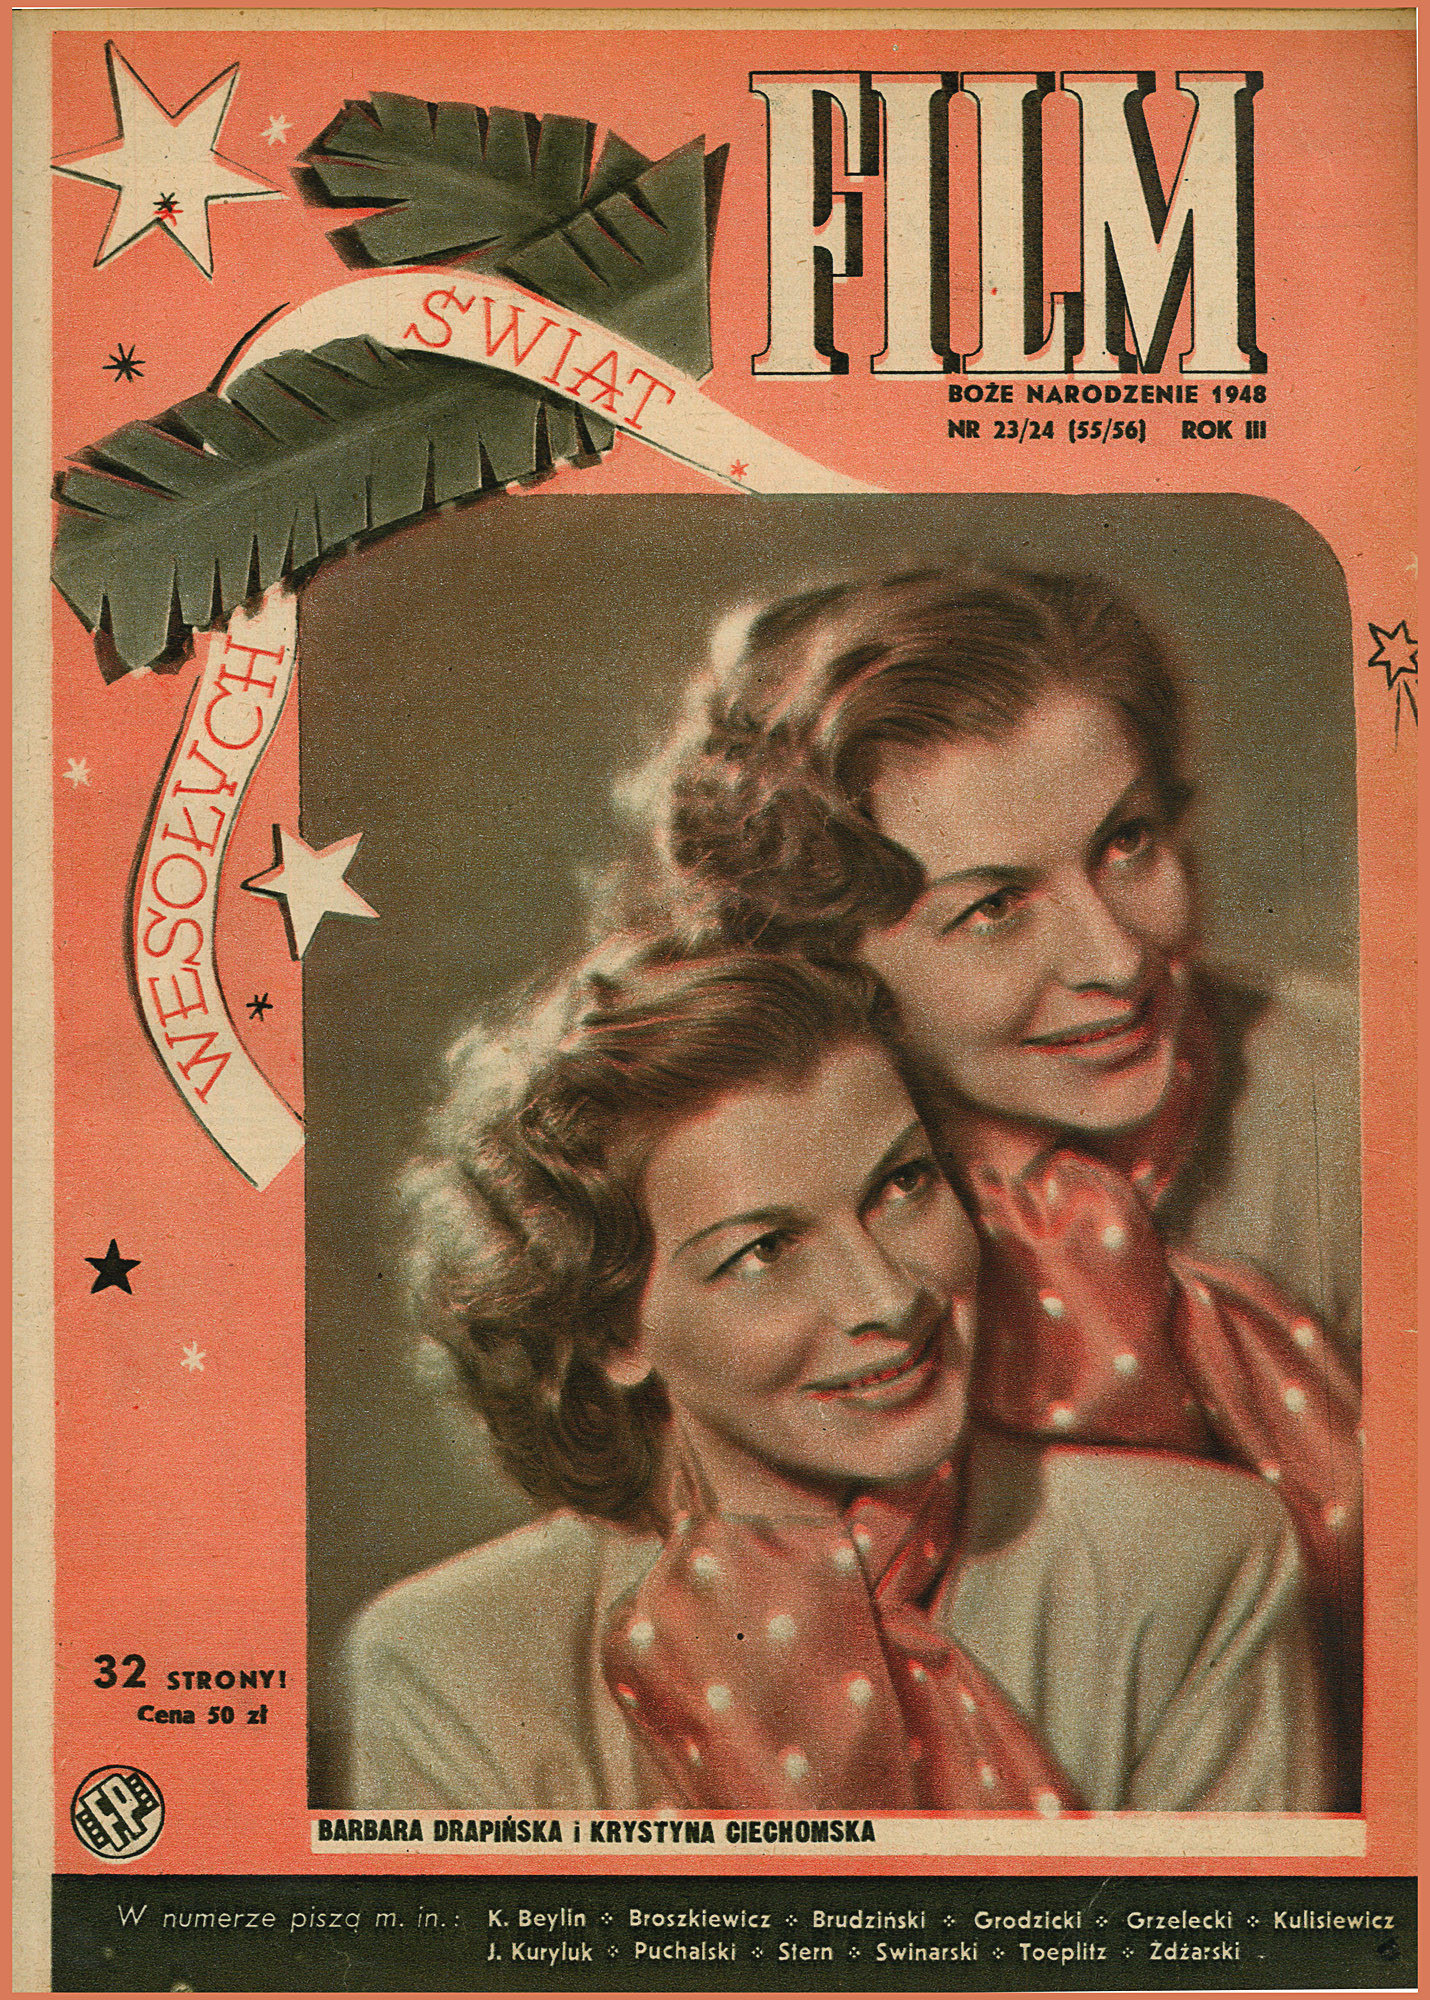 FILM: 23/24/1948 (55/56)